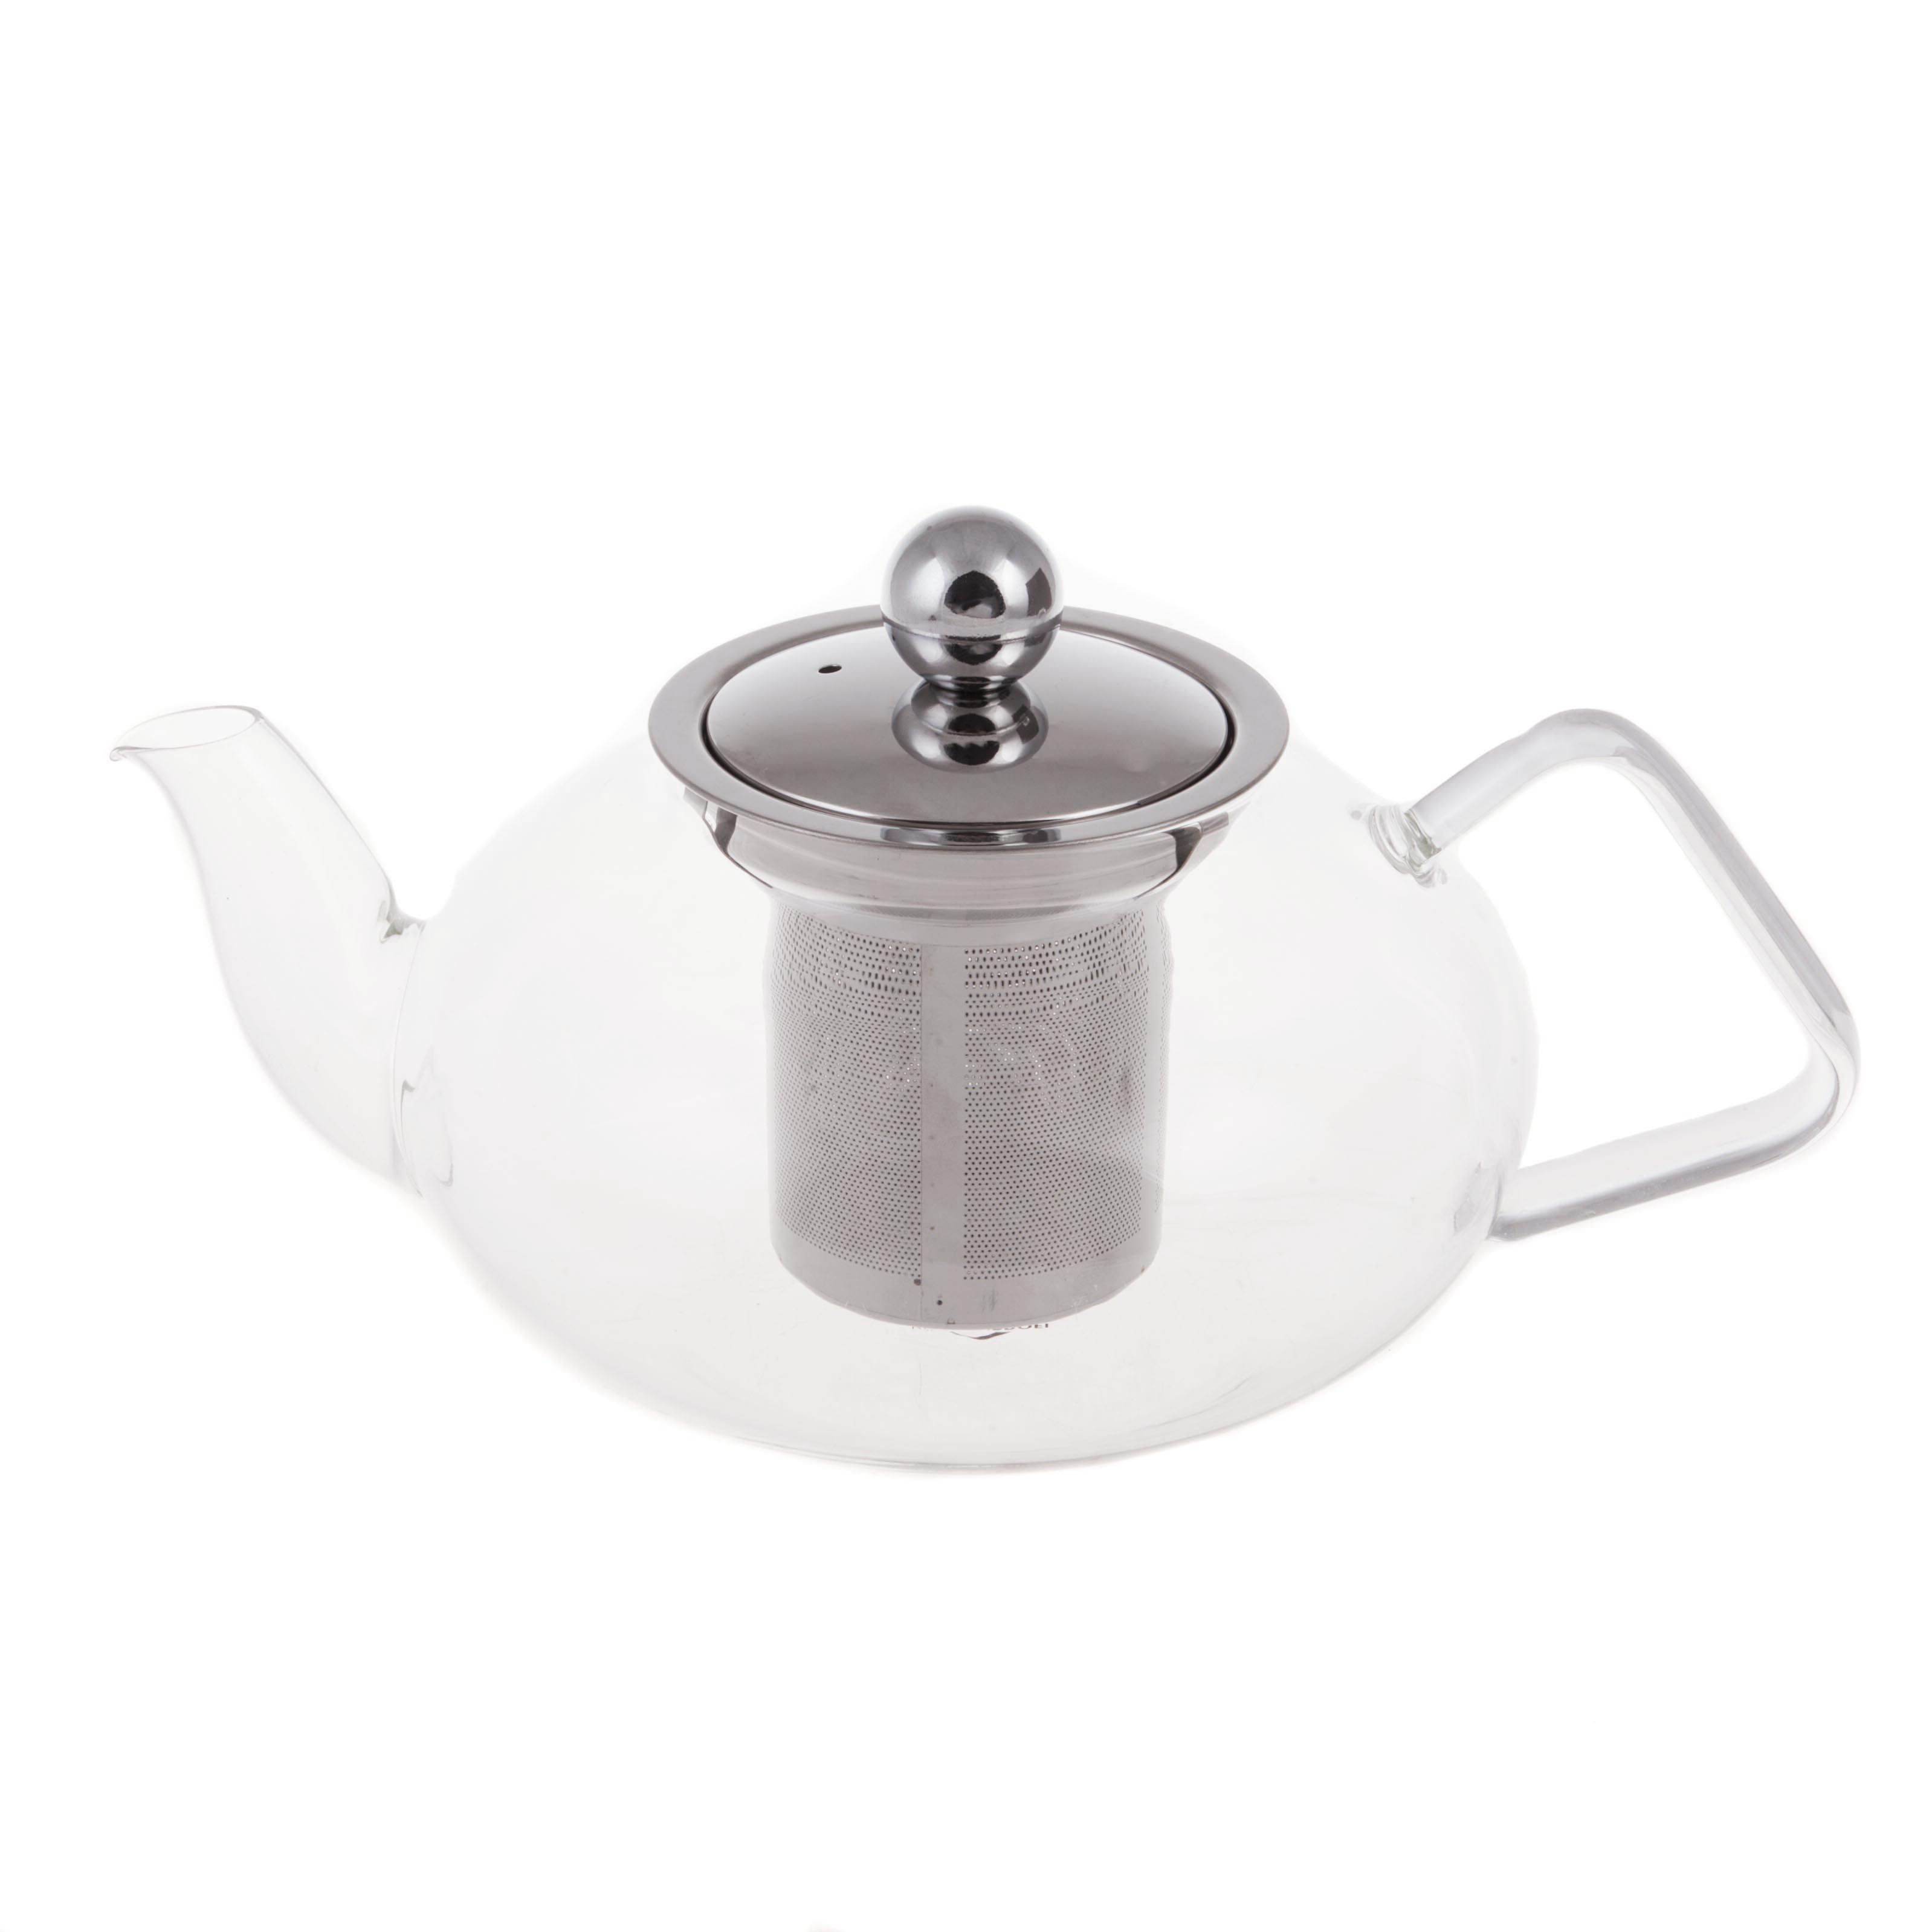 Чайник заварочный с ситечком. 1.2 л Kuchenprofi серебристый чайник заварочный керамика 0 7 л с ситечком loraine 28687 3 бежевый